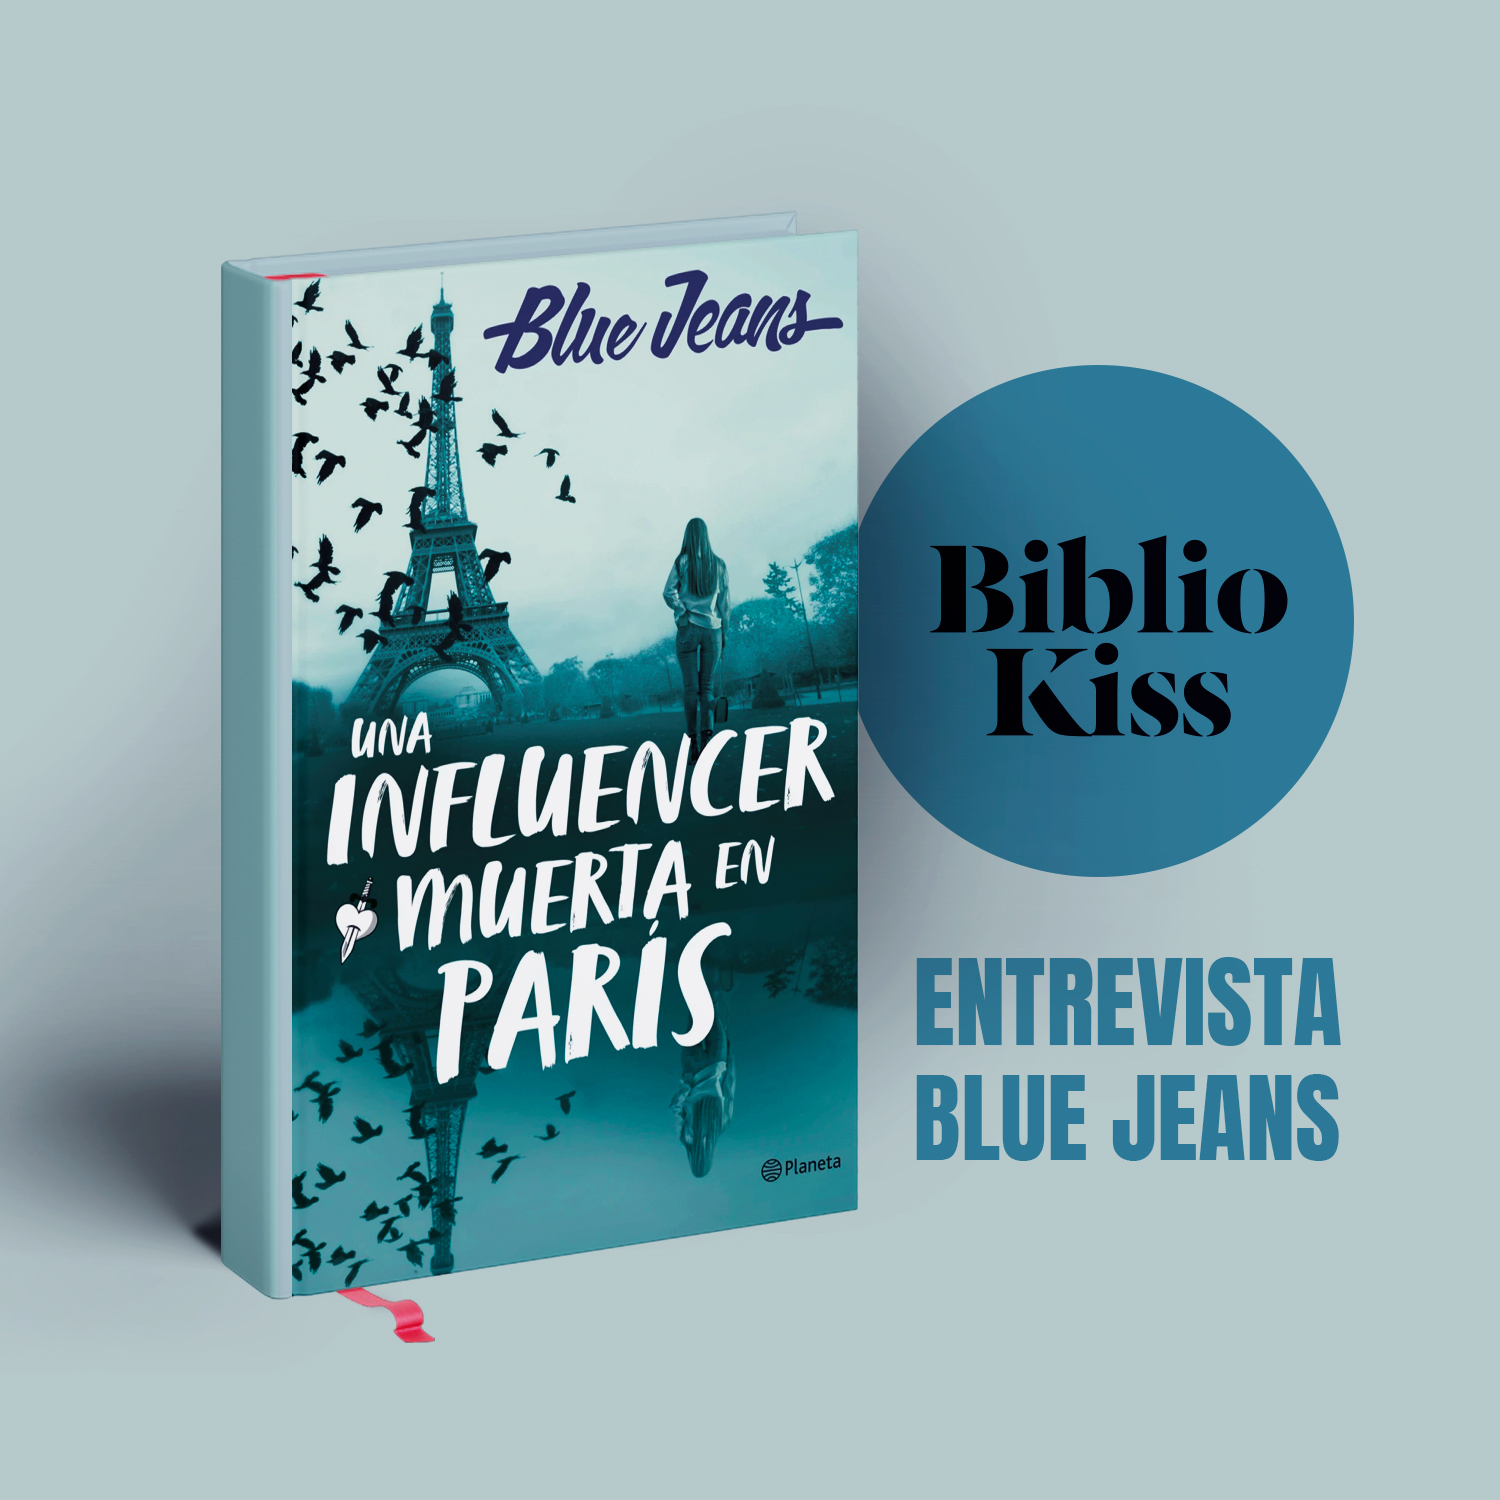 Blue Jeans se mete de lleno en el mundo de las redes con "Una influencer muerta en París"